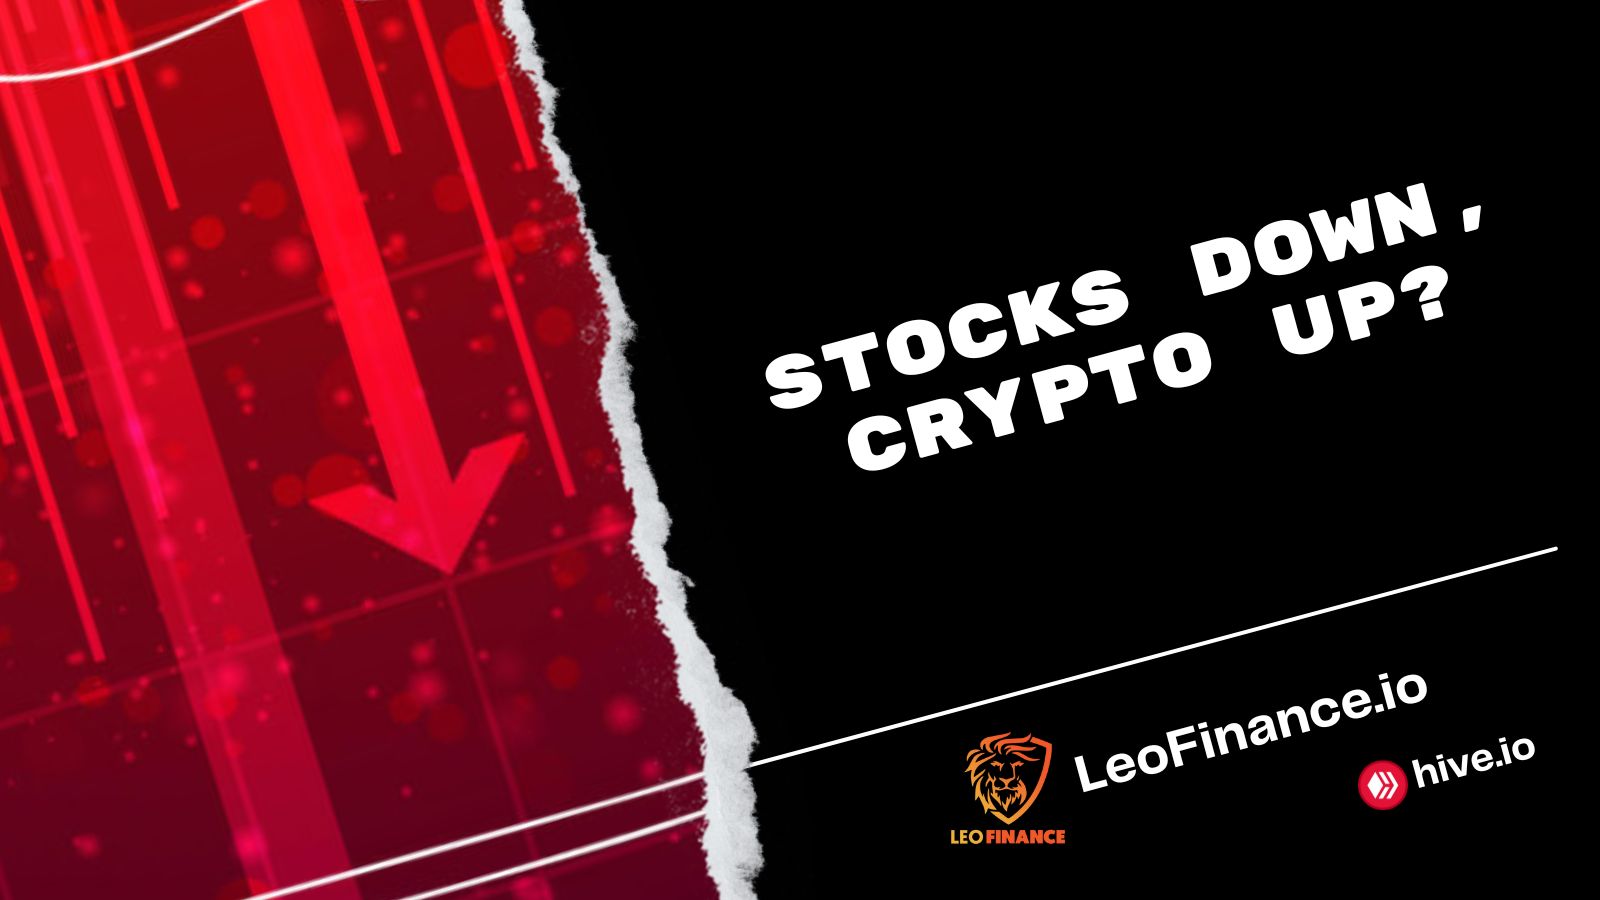 @bitcoinflood/stocks-down-crypto-up